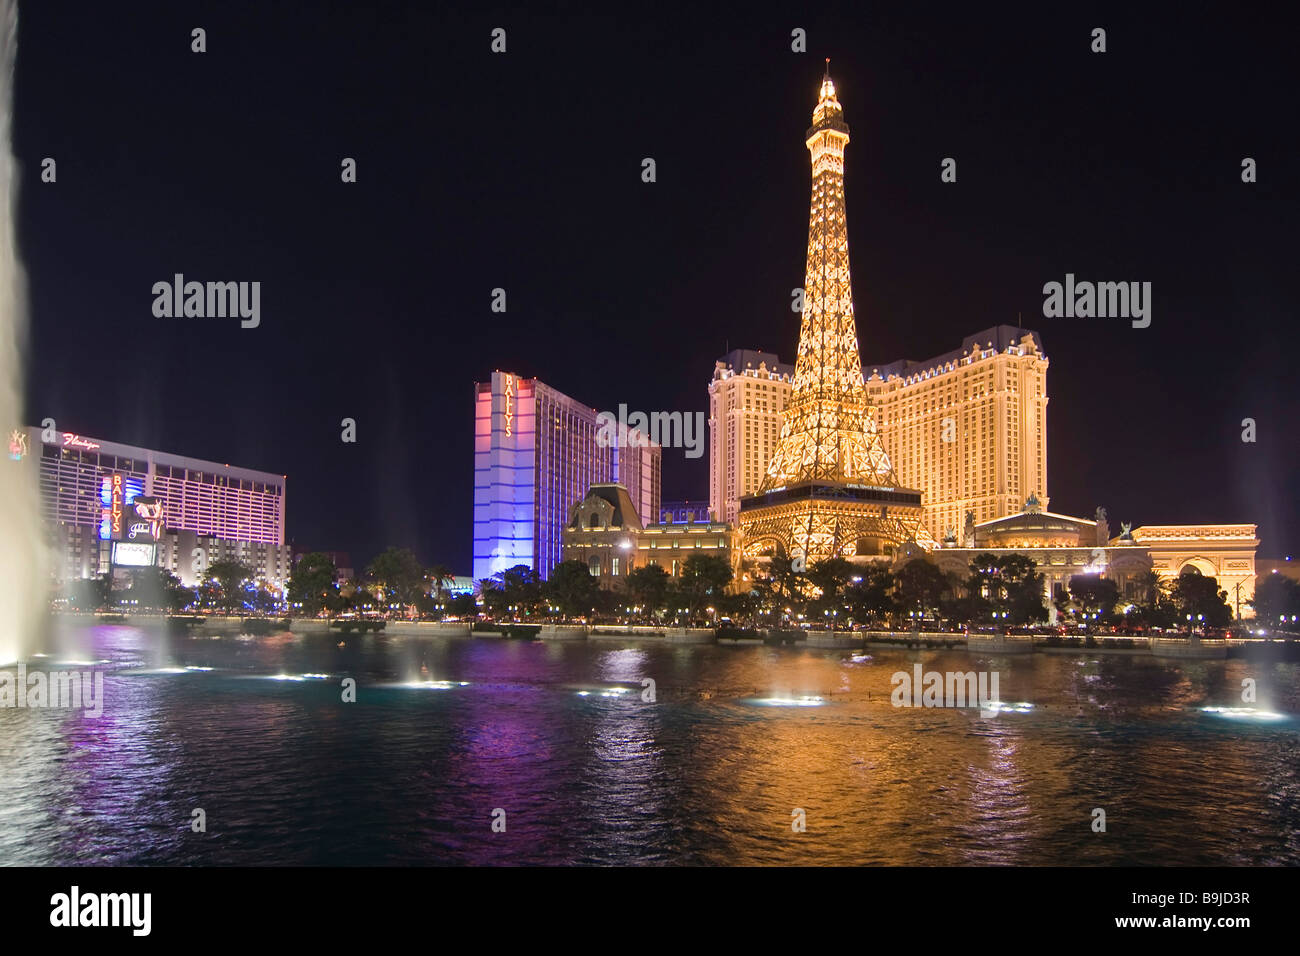 Hotel Paris e il lago di fronte a Bellagio da notte, Las Vegas, Nevada, Stati Uniti d'America, America del Nord Foto Stock